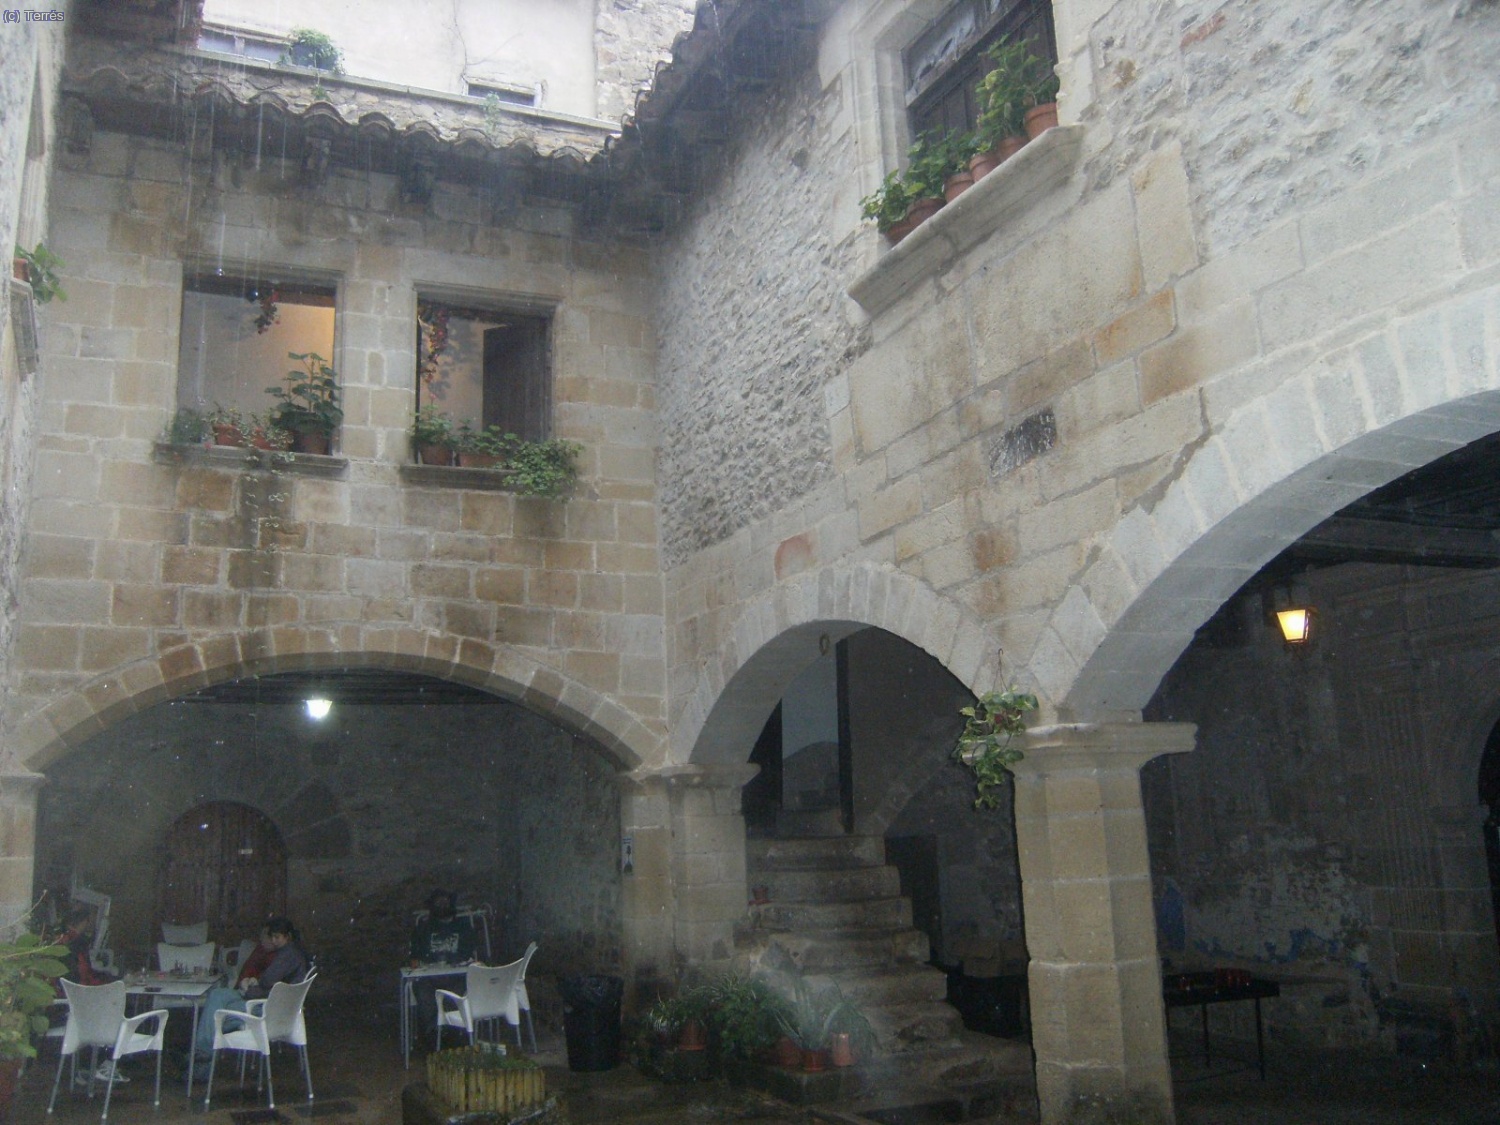 Sant Joan del Penyagolosa. Los chorros de agua de lluvia cae de los tejados.